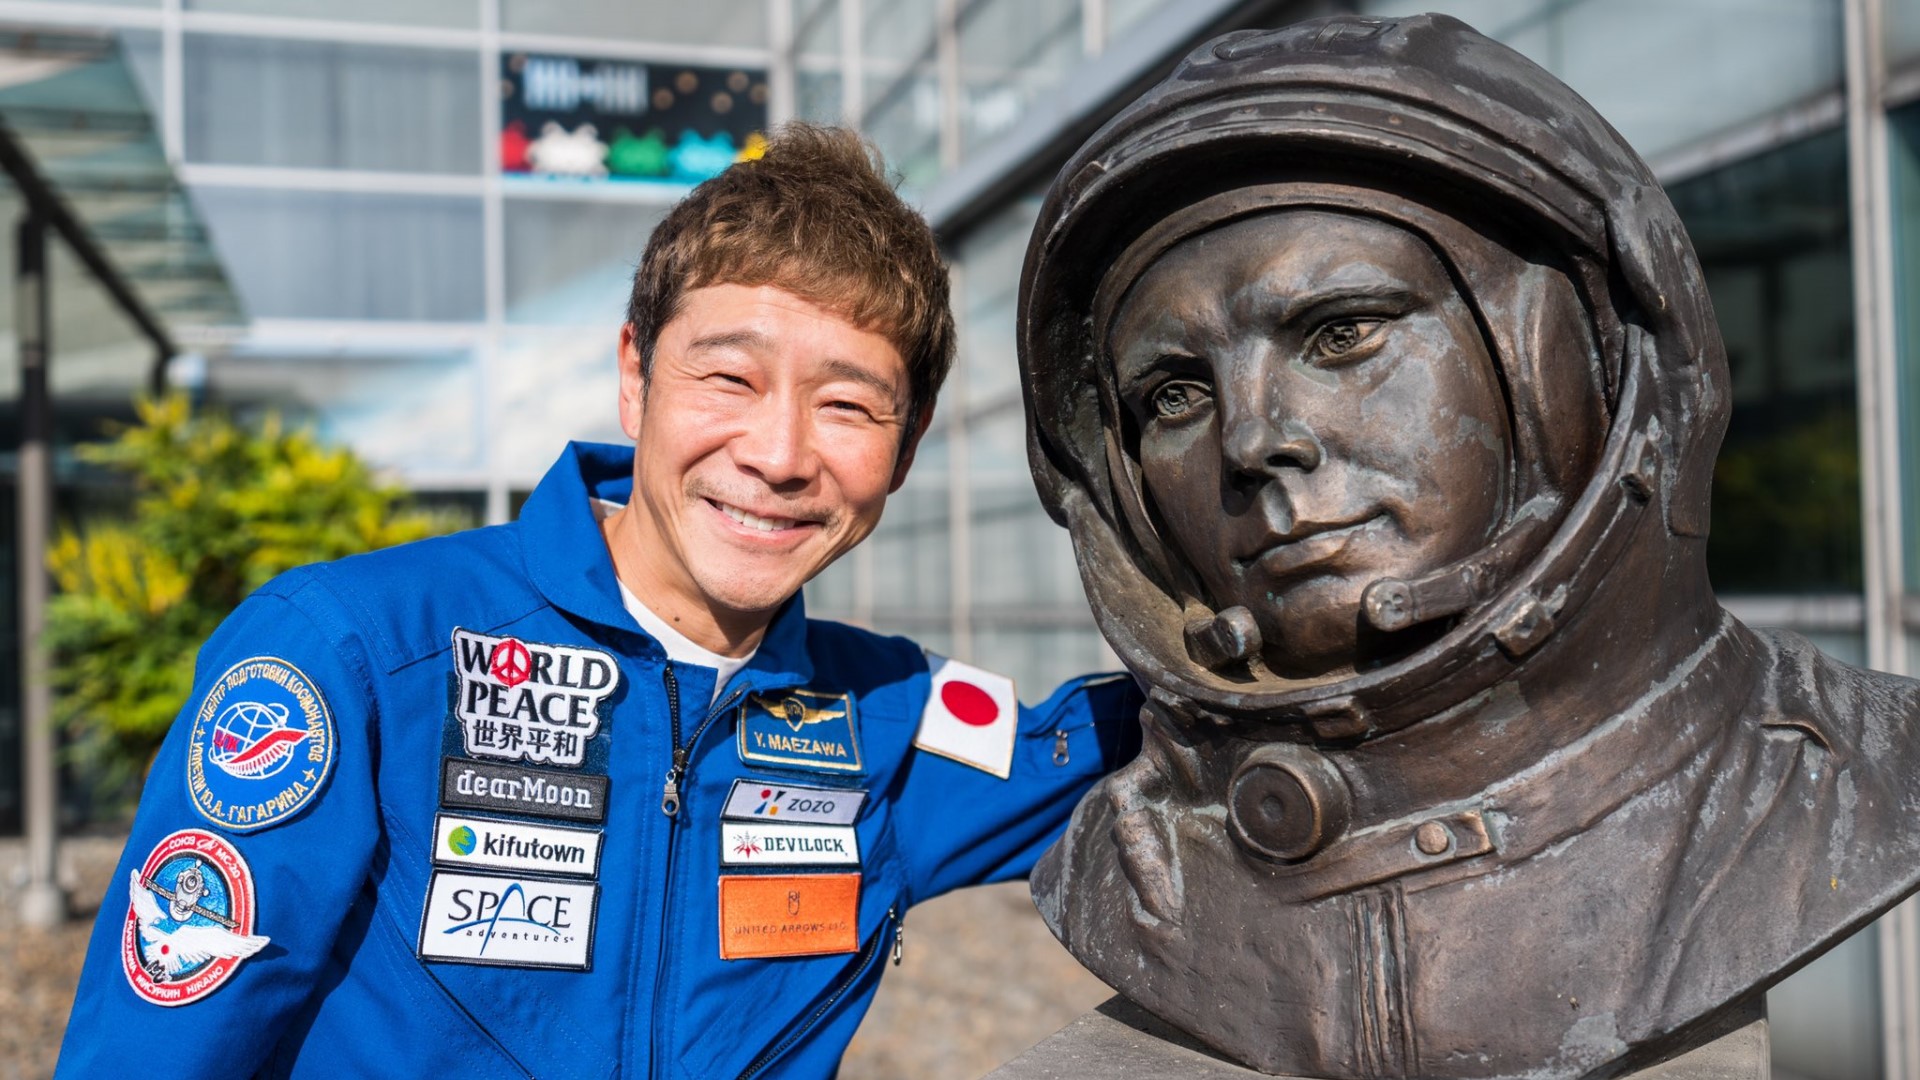 Yusaku Maezawa มหาเศรษฐีญี่ปุ่นจะประกาศแผนเกี่ยวกับอวกาศครั้งสำคัญใน 8 ธ.ค.